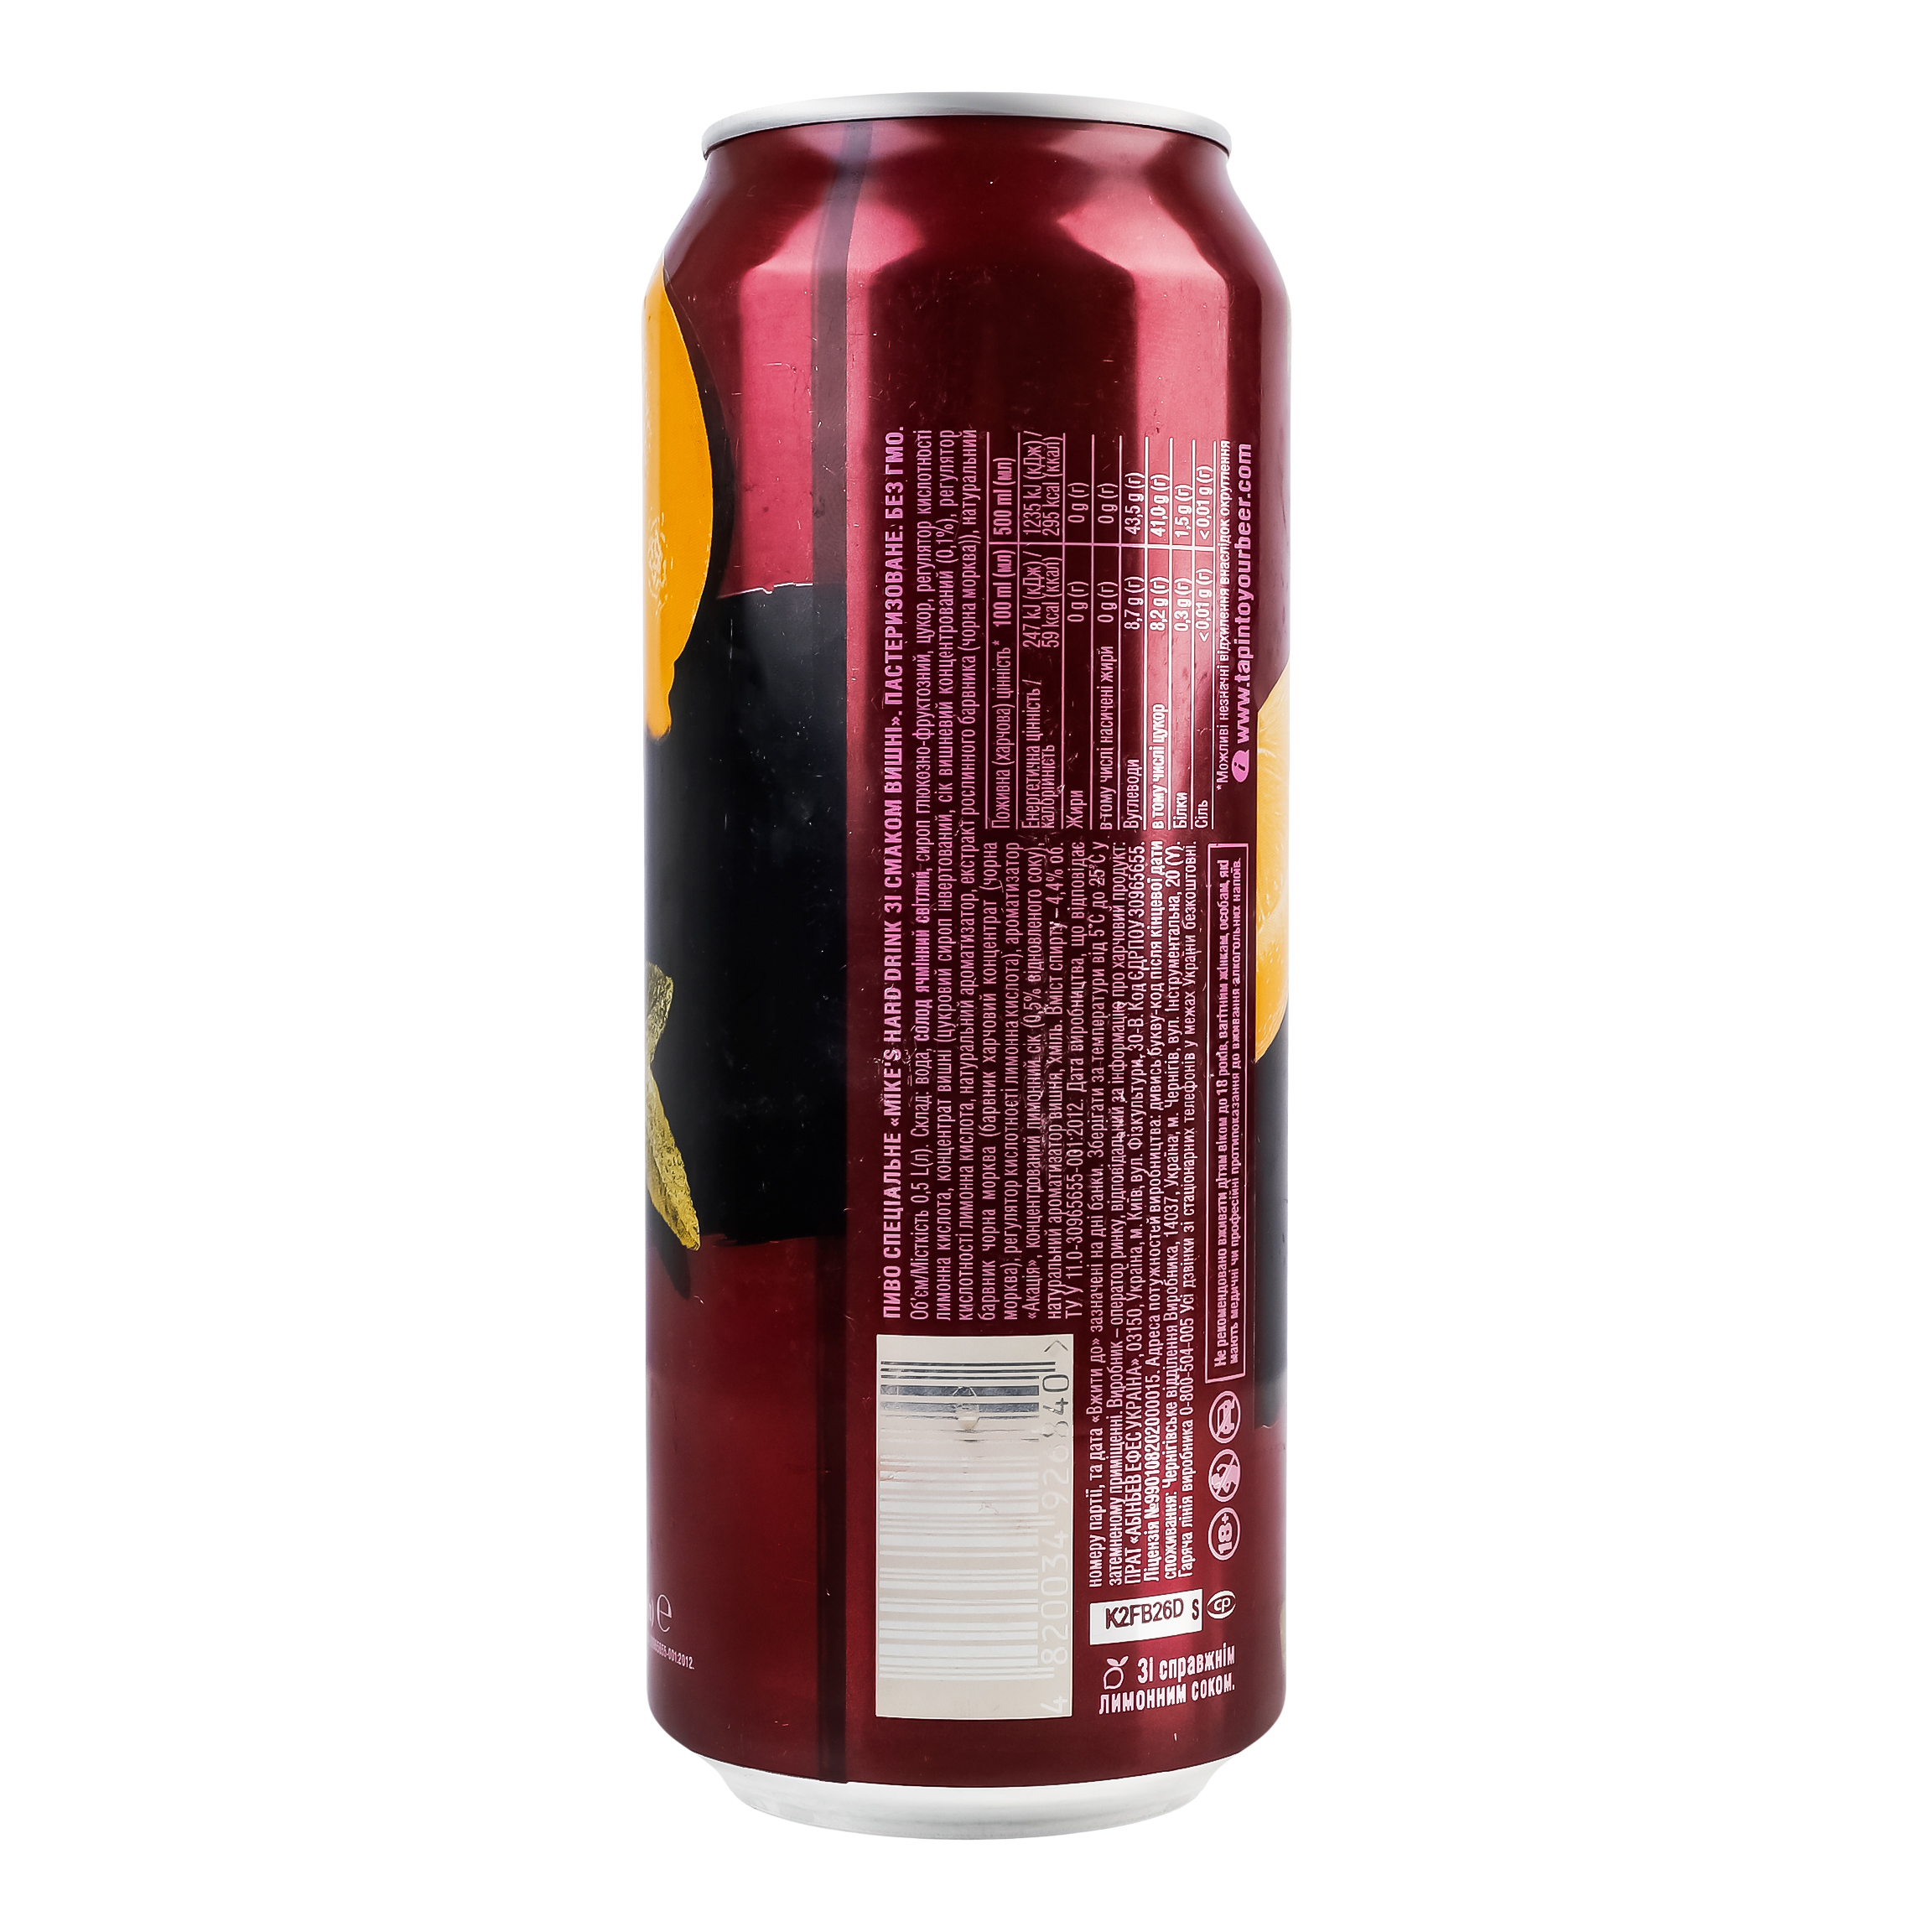 Пиво Mike's Hard Drink Cherry 4.4% 0.5 л ж/б - фото 3